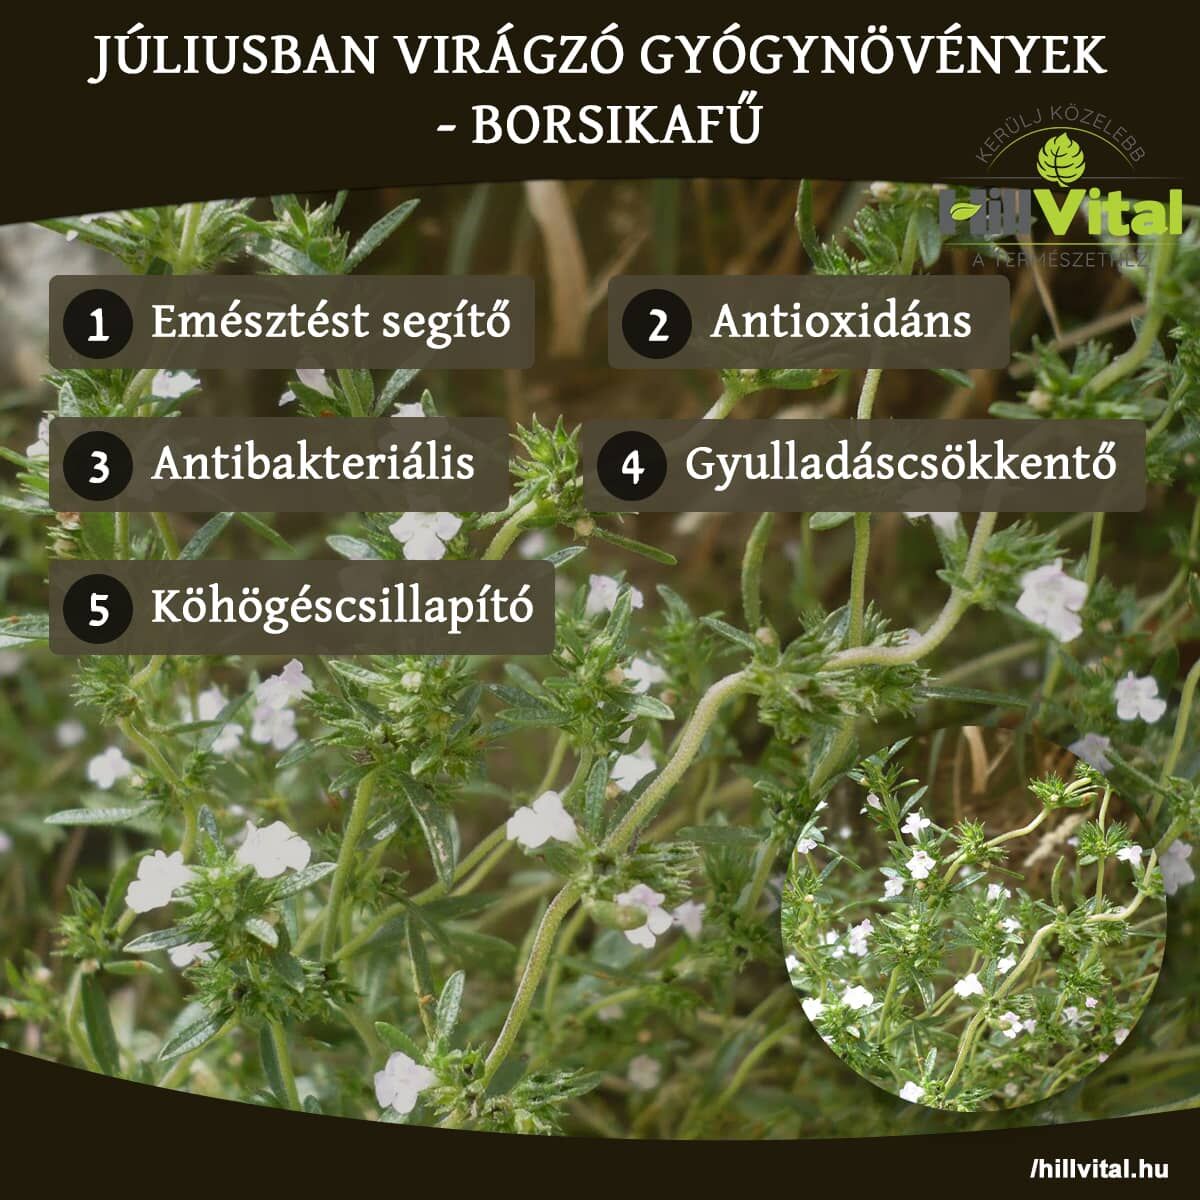 Júliusban virágzó gyógynövények - Borsikafű